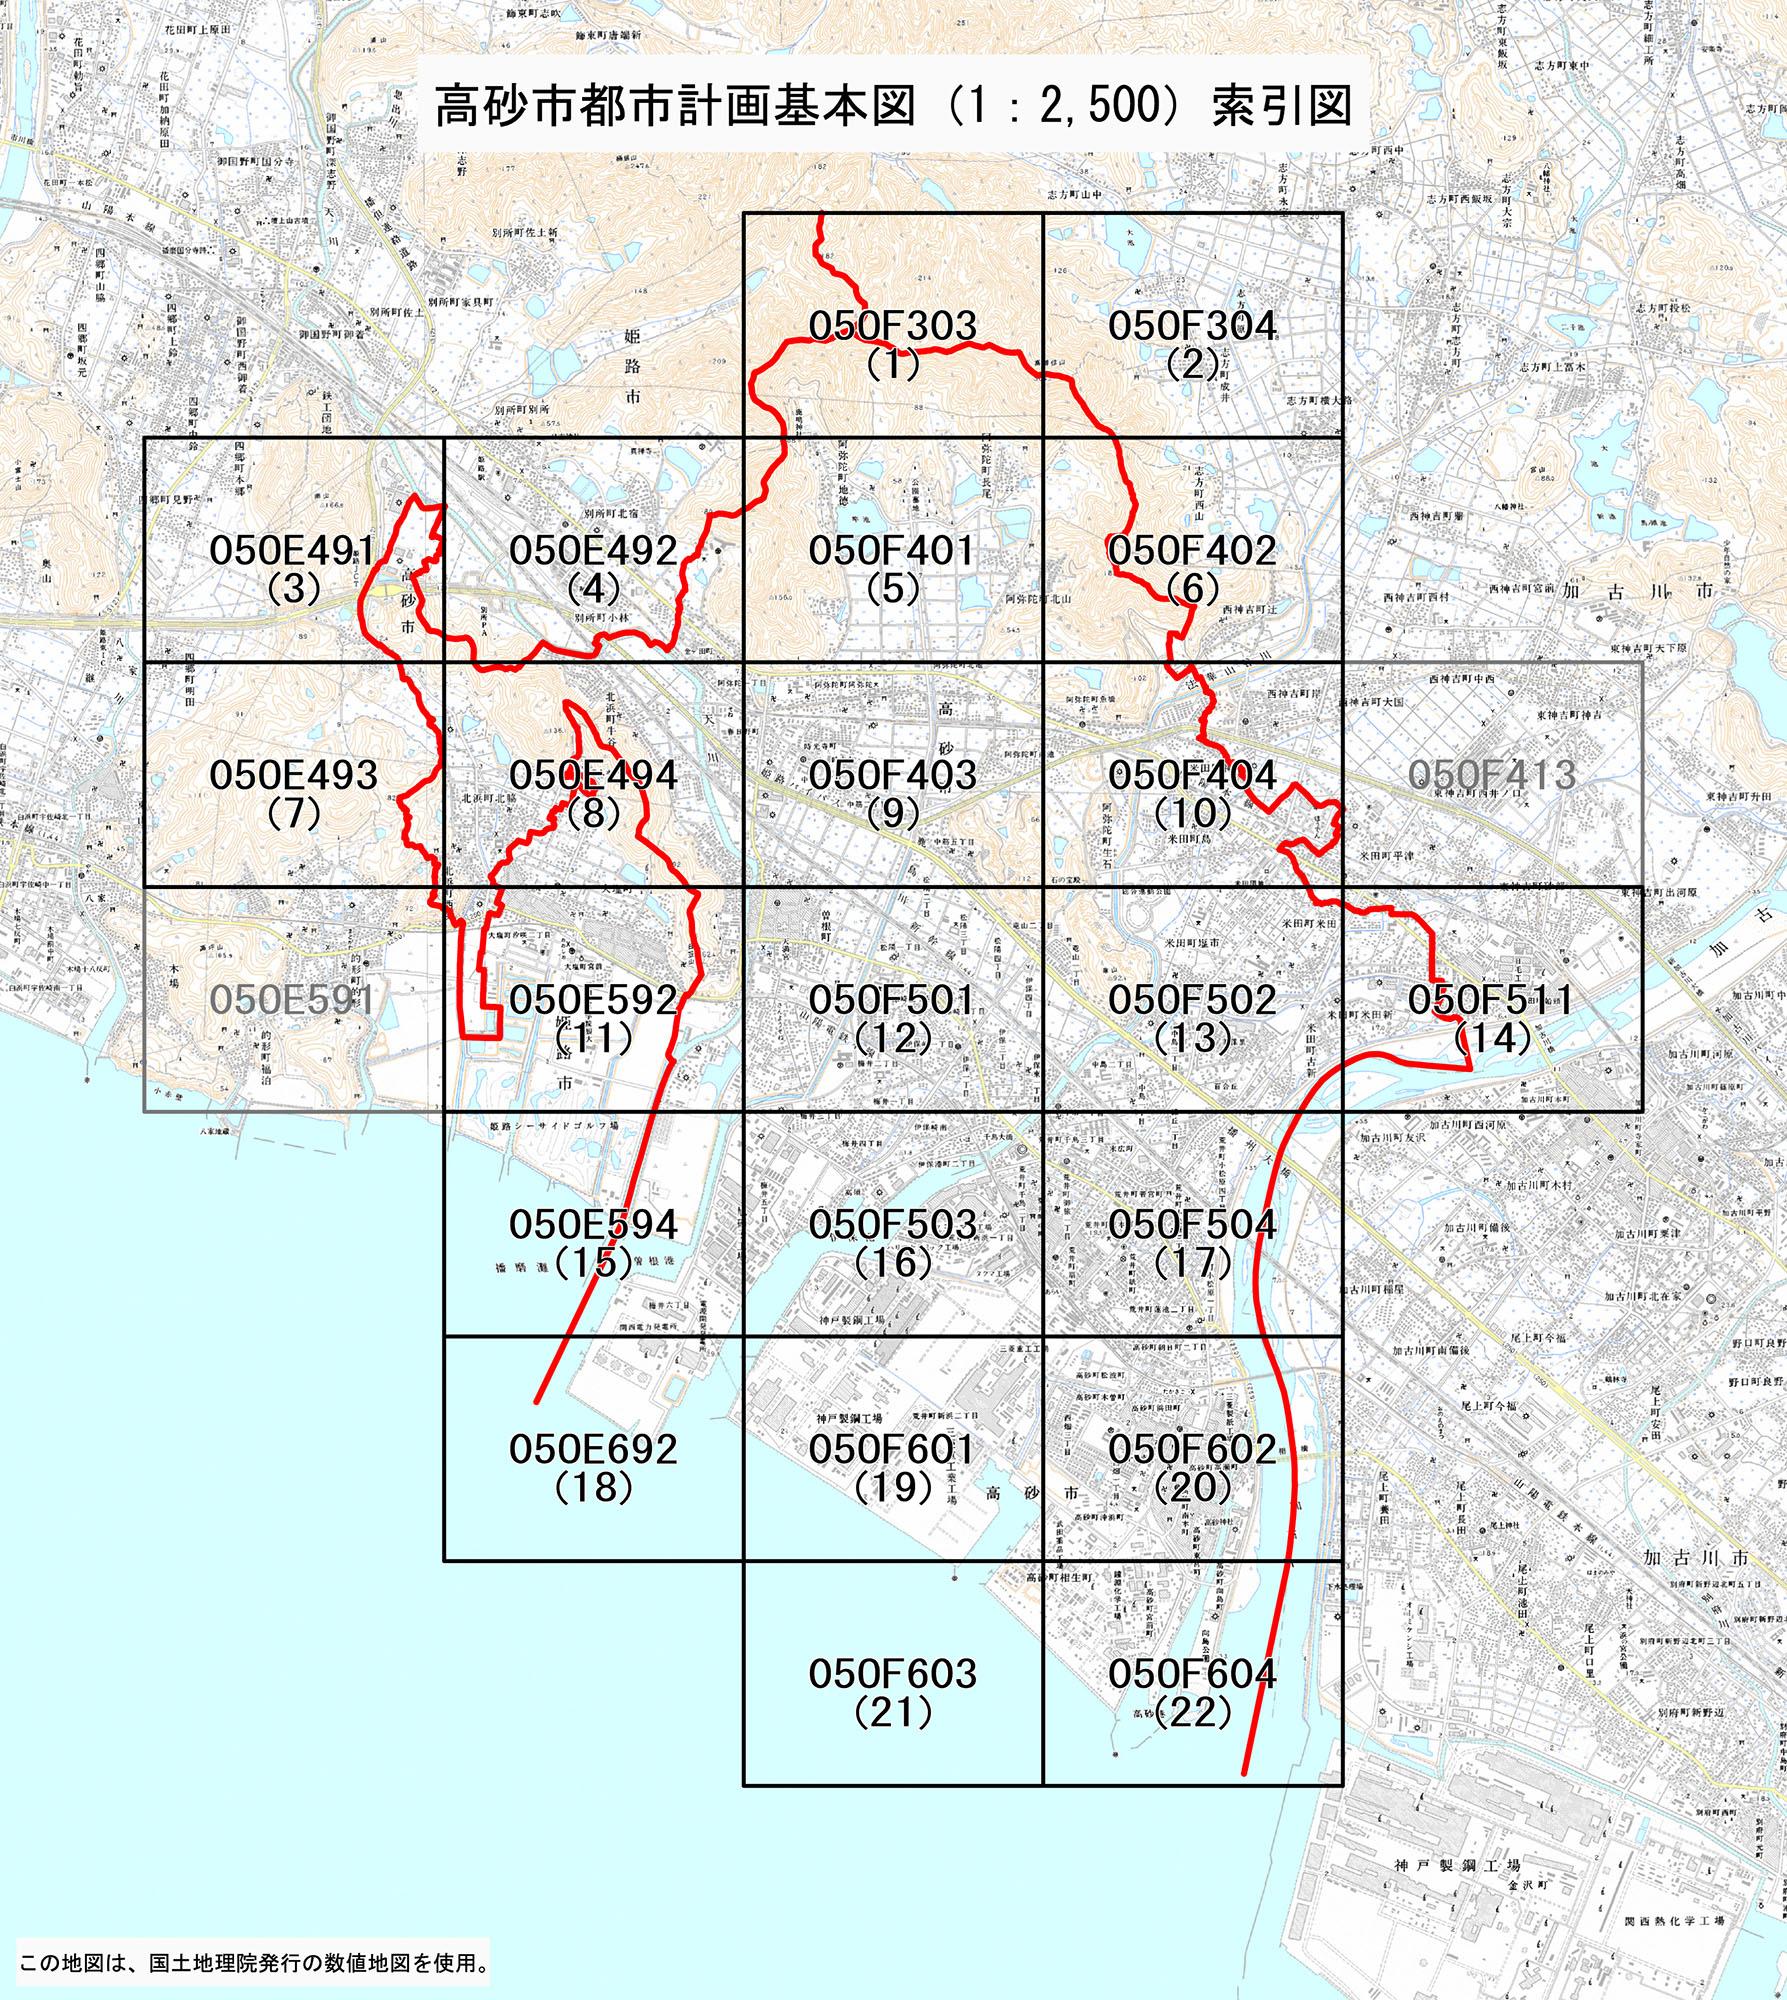 各地区ごとにコードが割り振られた高砂市計画基本図（2500分の1）索引図